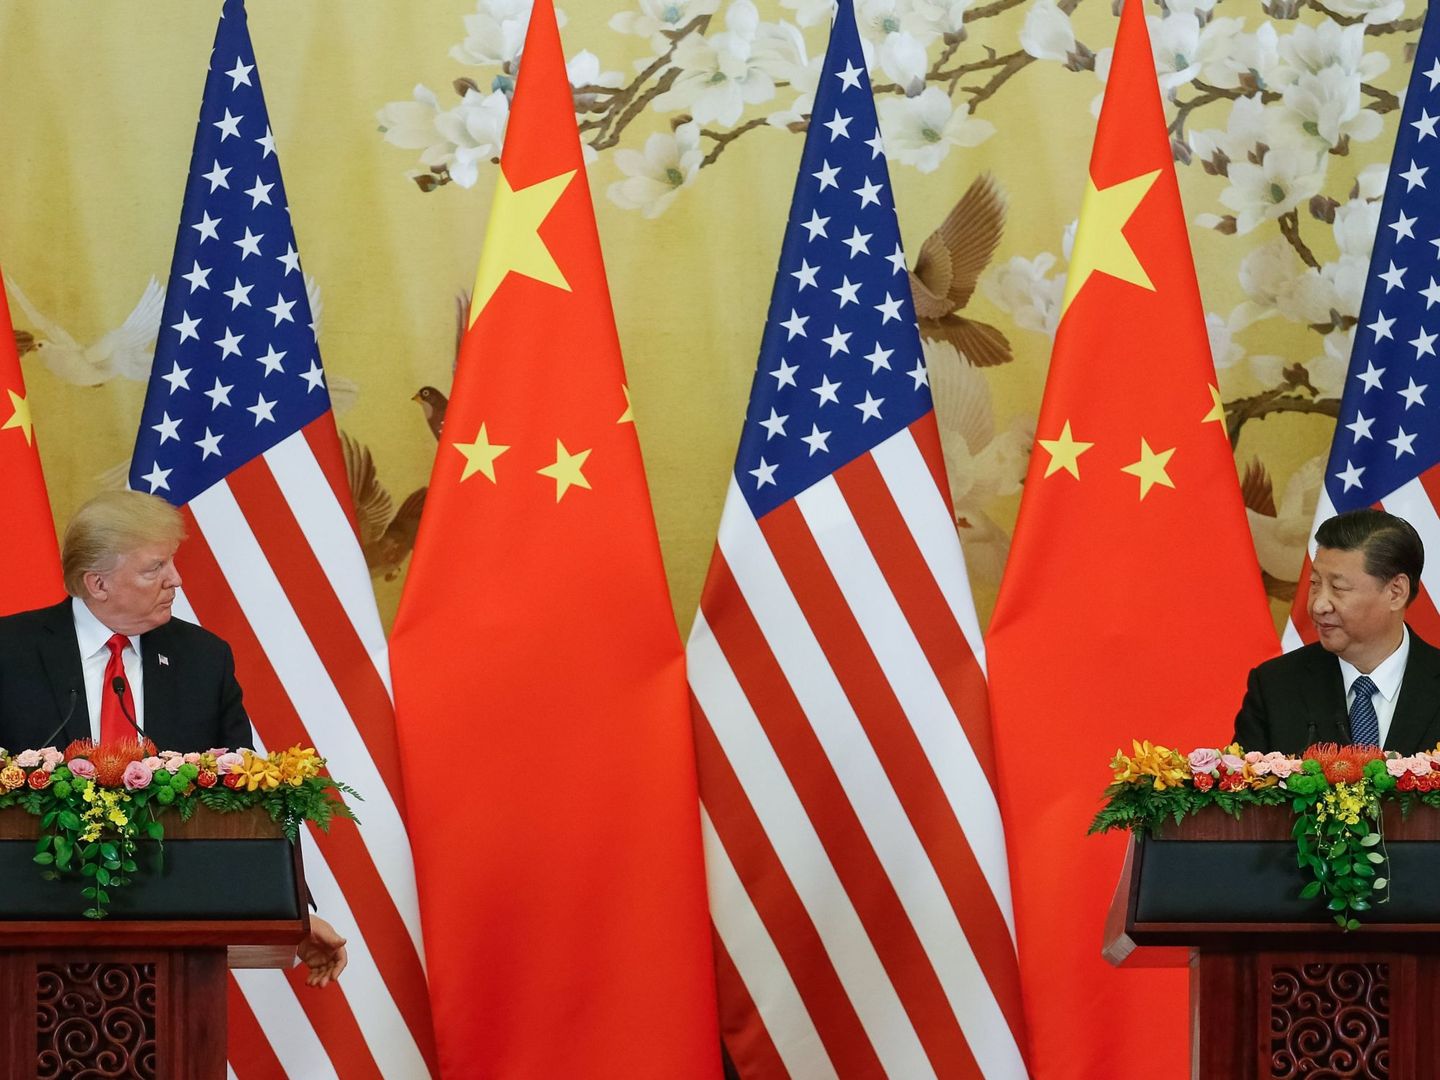 El presidente de los EEUU, Donald Trump, y su homólogo chino, Xi Jingping, ofrecen una rueda de prensa en el Gran Palacio del Pueblo en Pekín (China) el 9 de noviembre de 2017. (EFE)